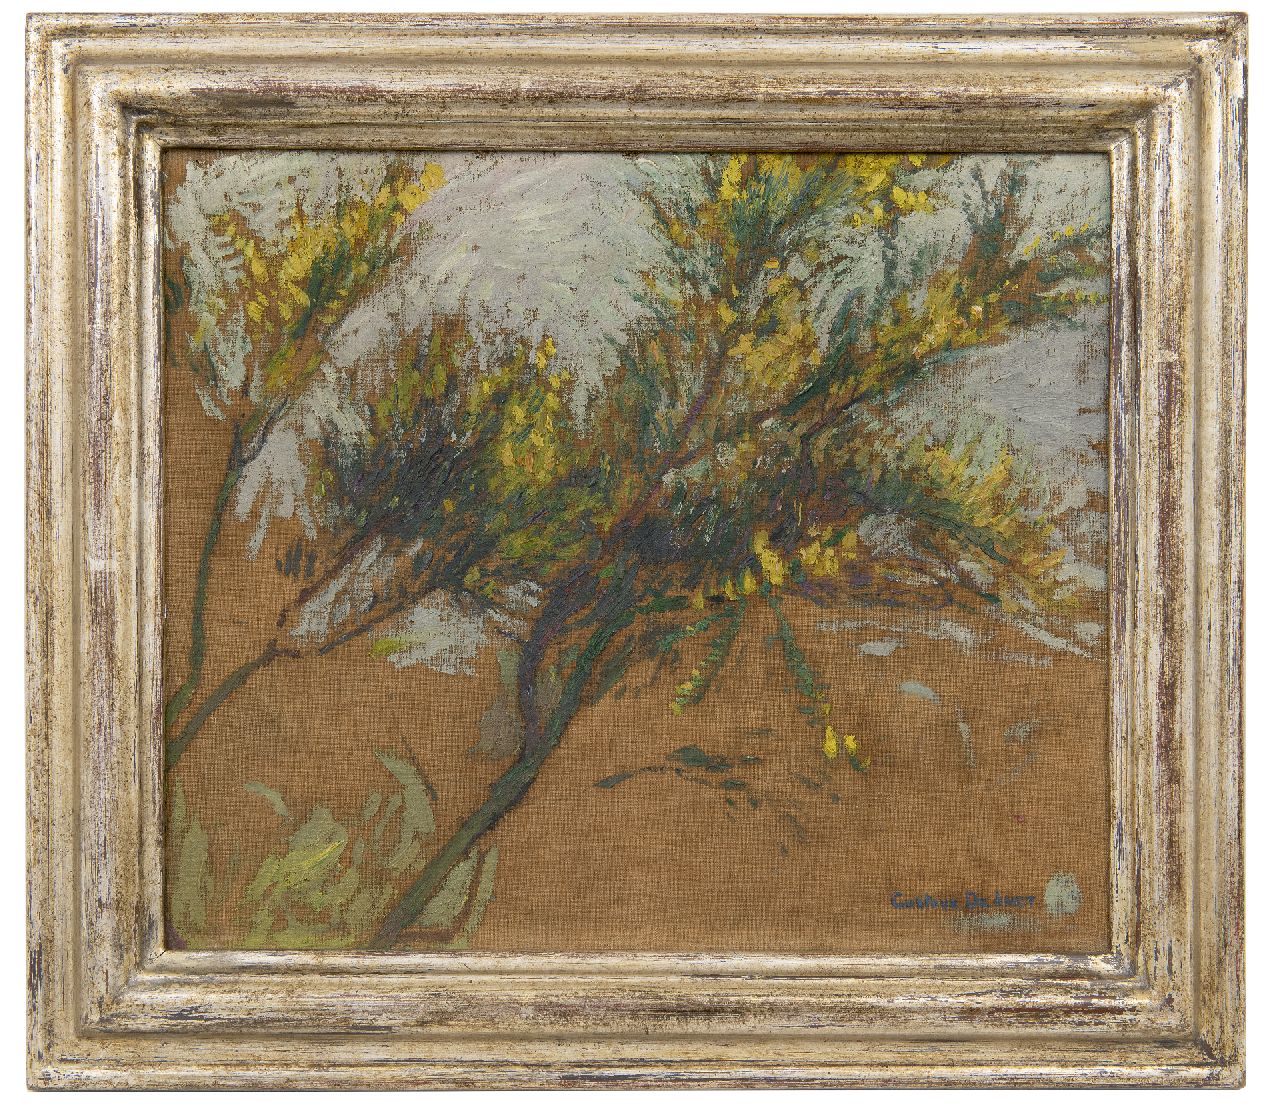 Smet G. de | Gustave de Smet | Schilderijen te koop aangeboden | Boomstudie, olieverf op doek 33,2 x 40,0 cm, gesigneerd rechtsonder